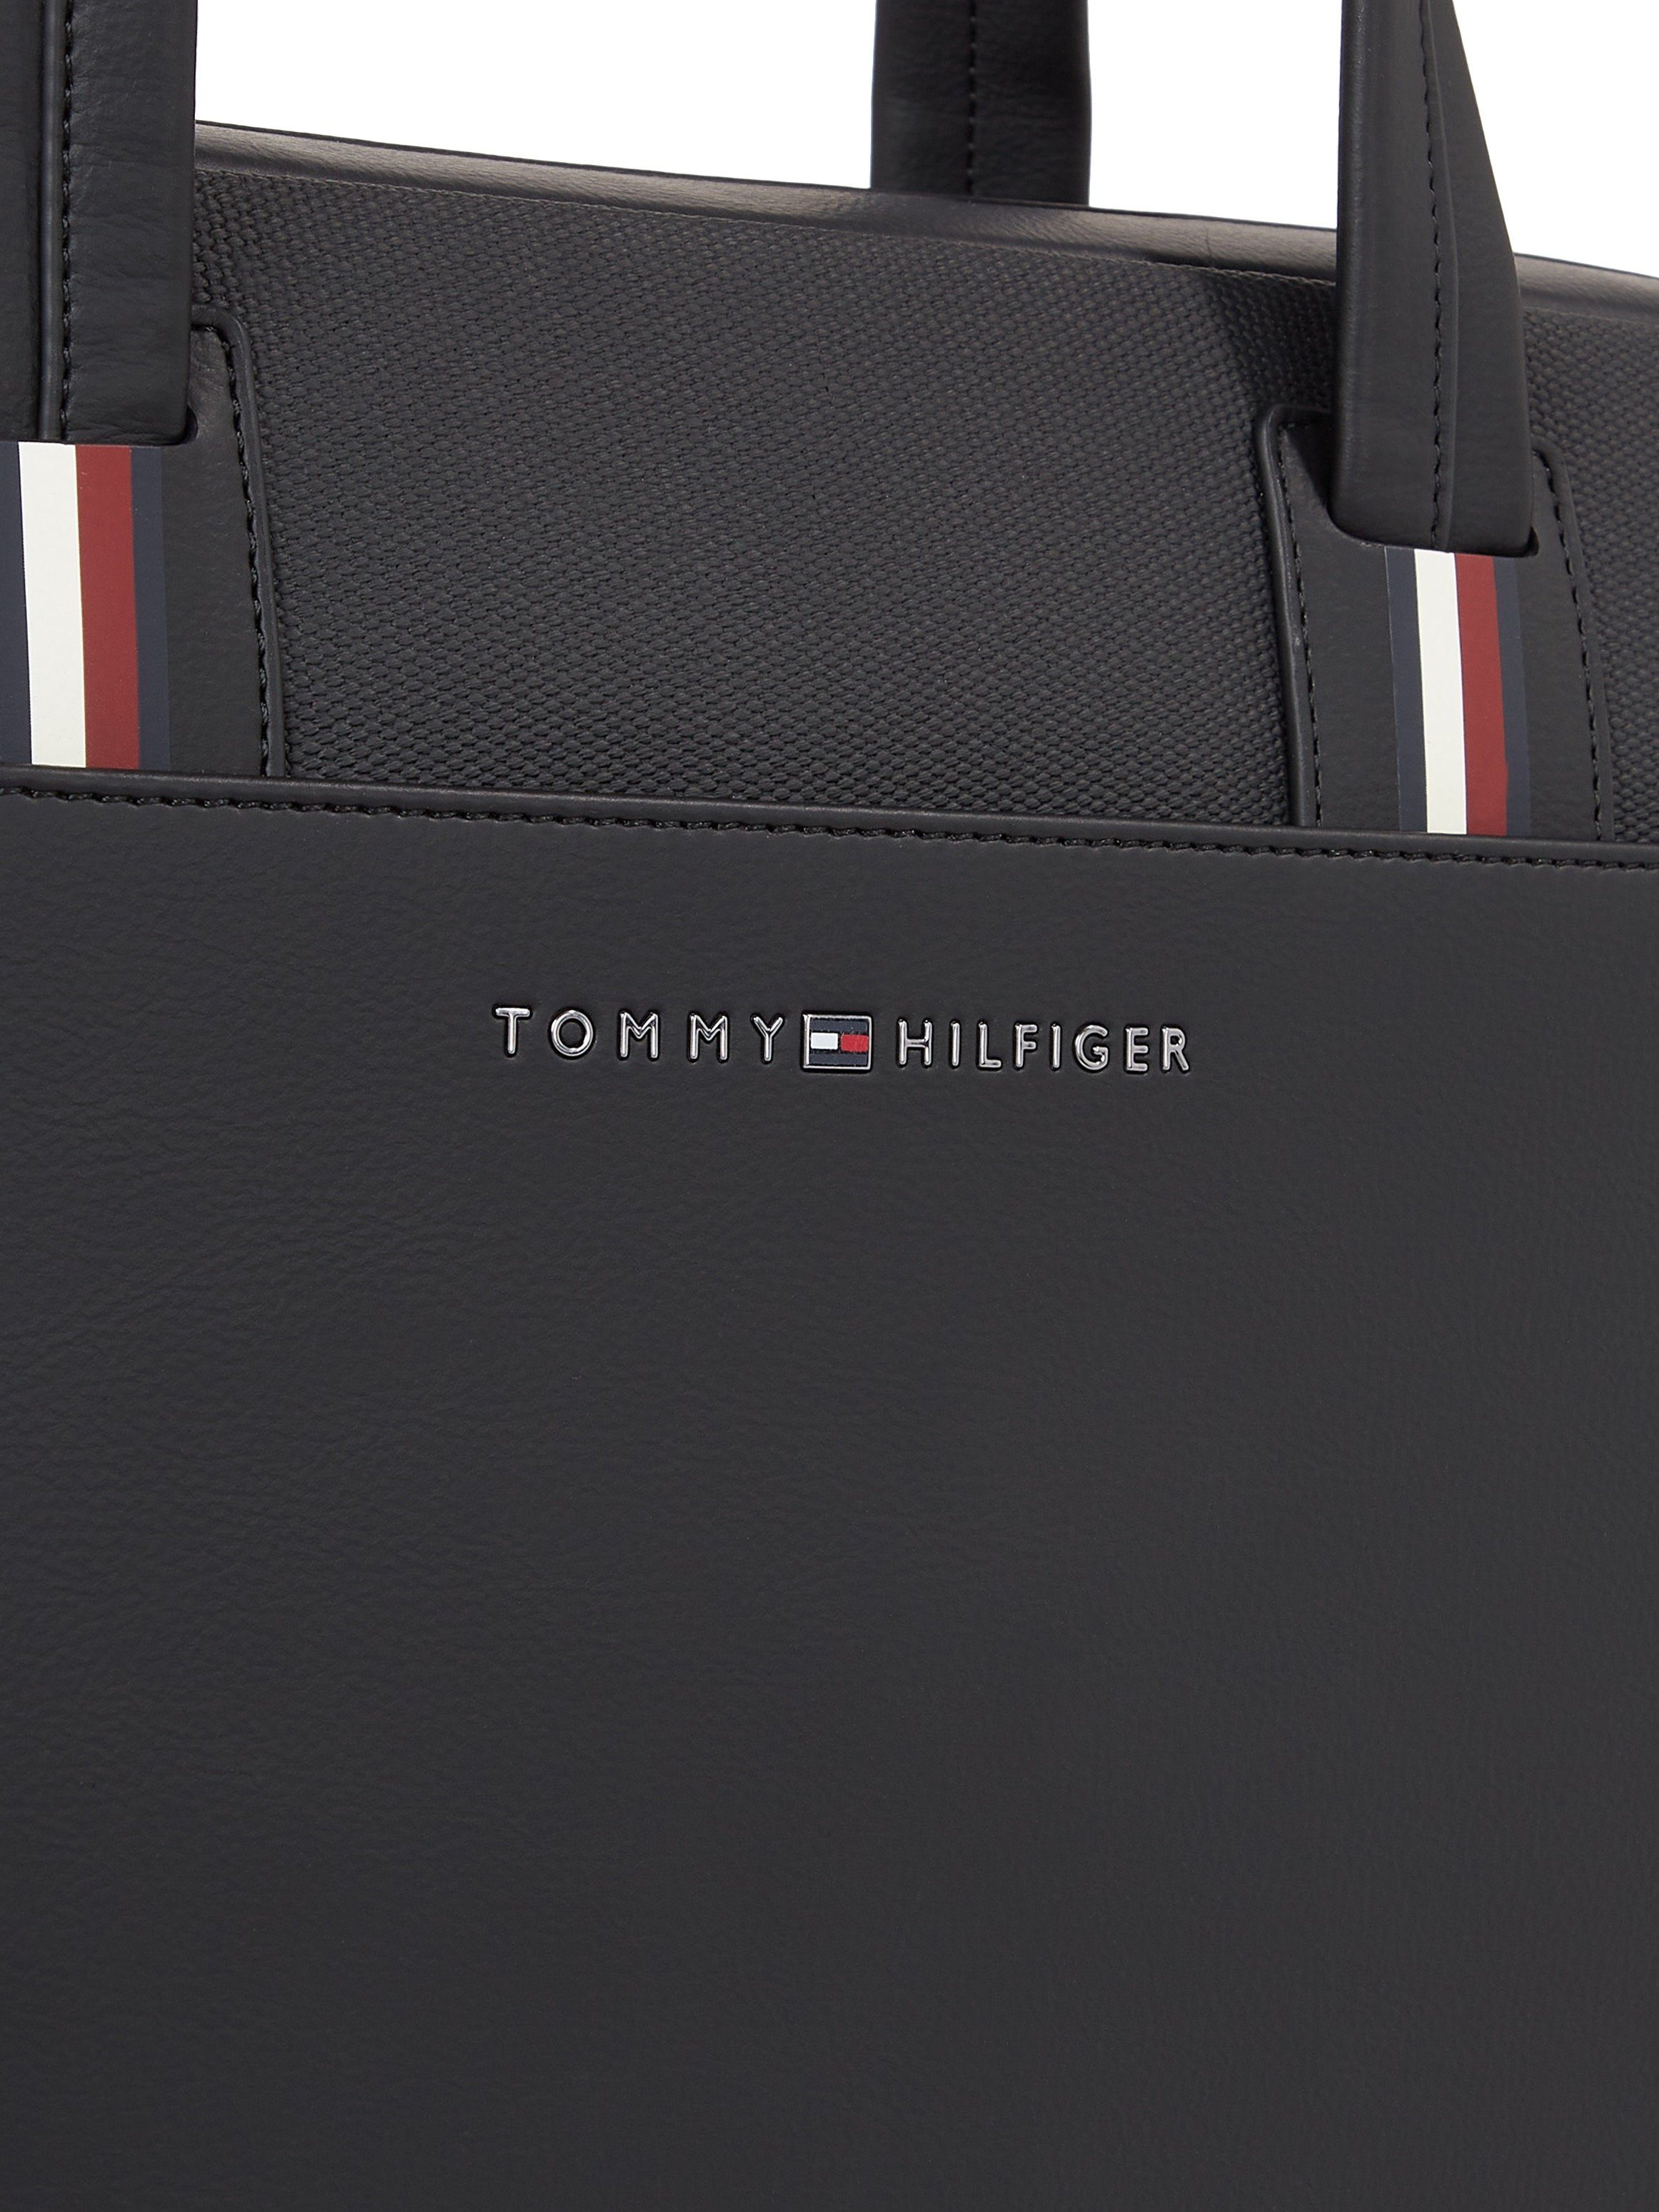 Tommy Hilfiger Messenger Bag TH CORPORATE COMPUTER BAG